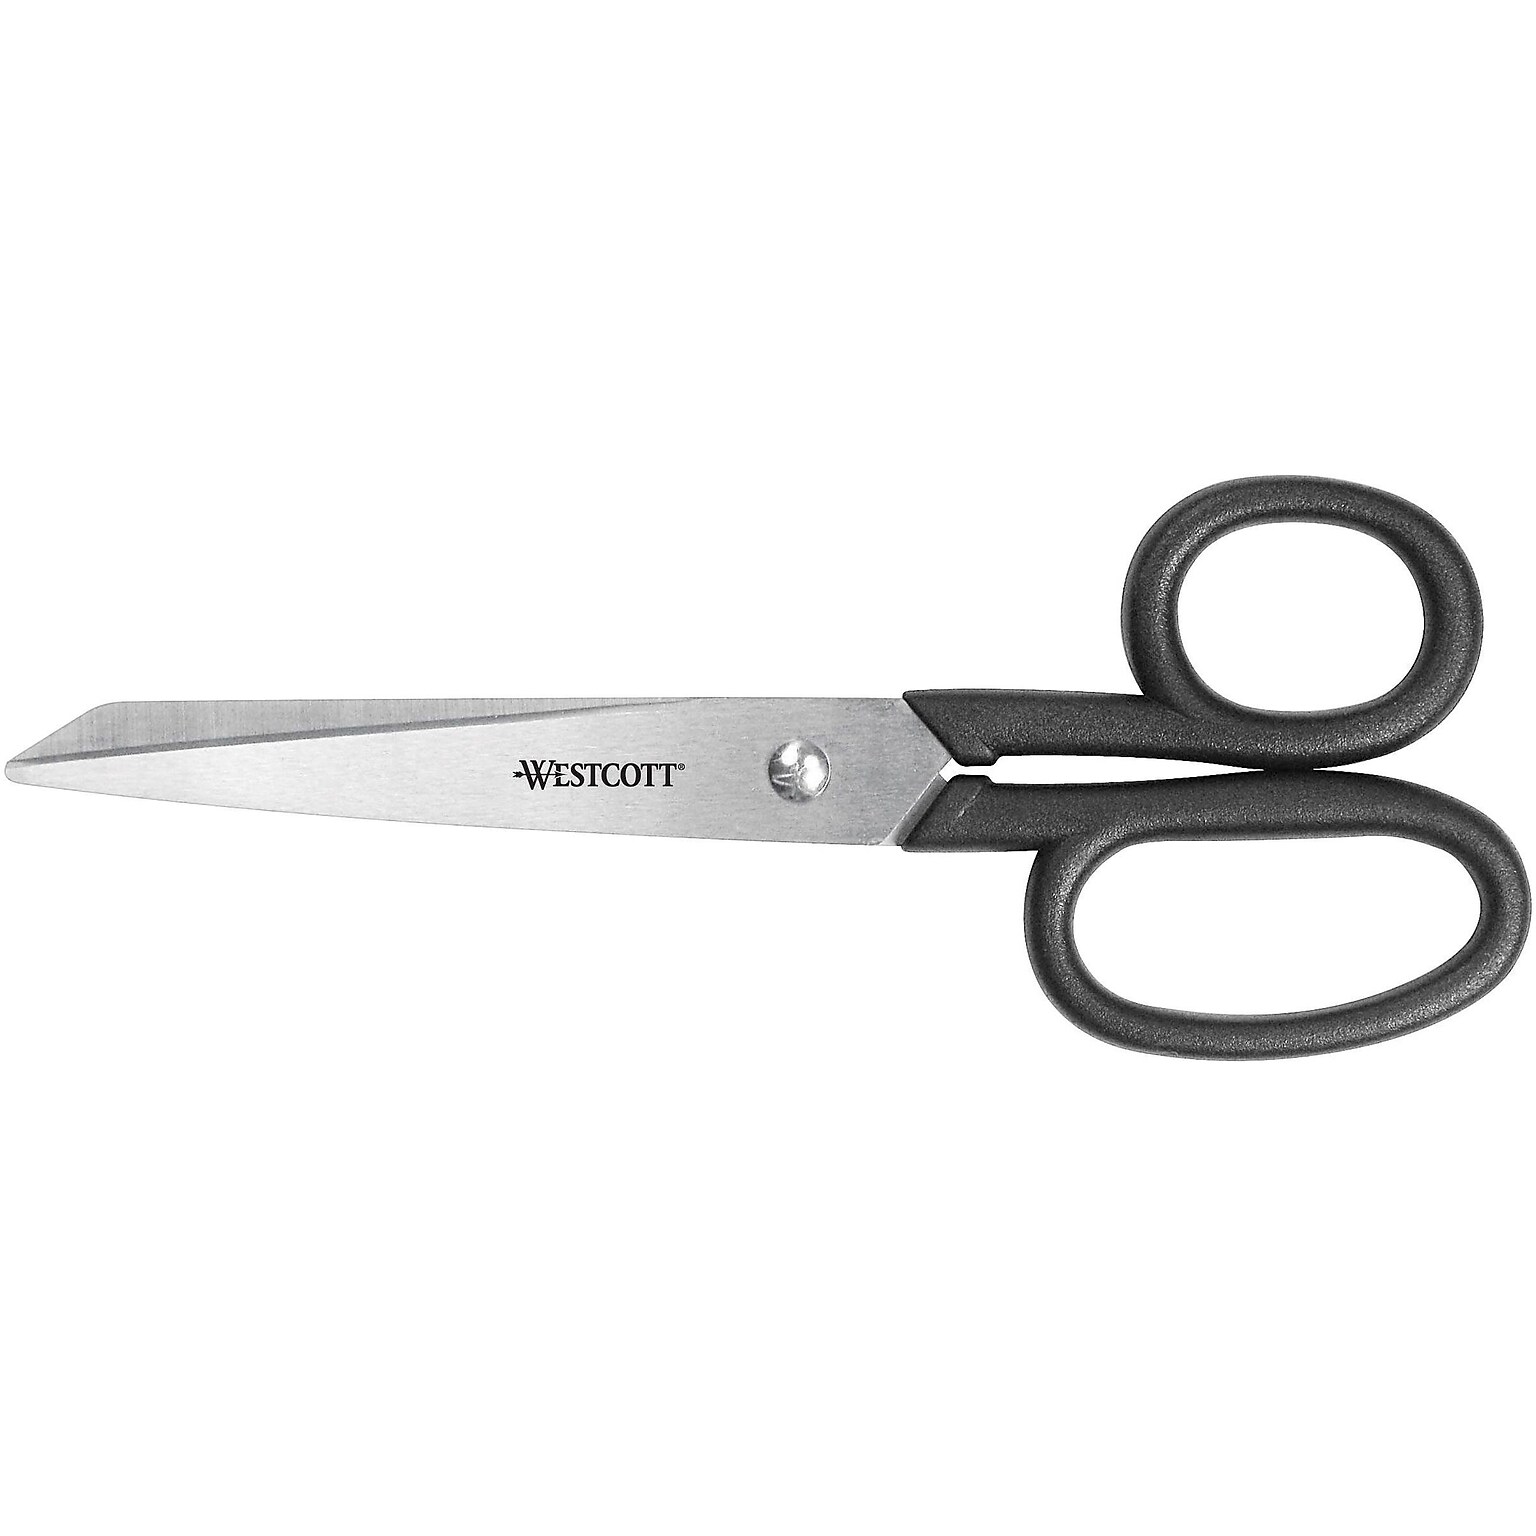 Westcott® All Purpose Kleencut® 7 Stainless Steel Scissors, Pointed Tip, Black (19017)